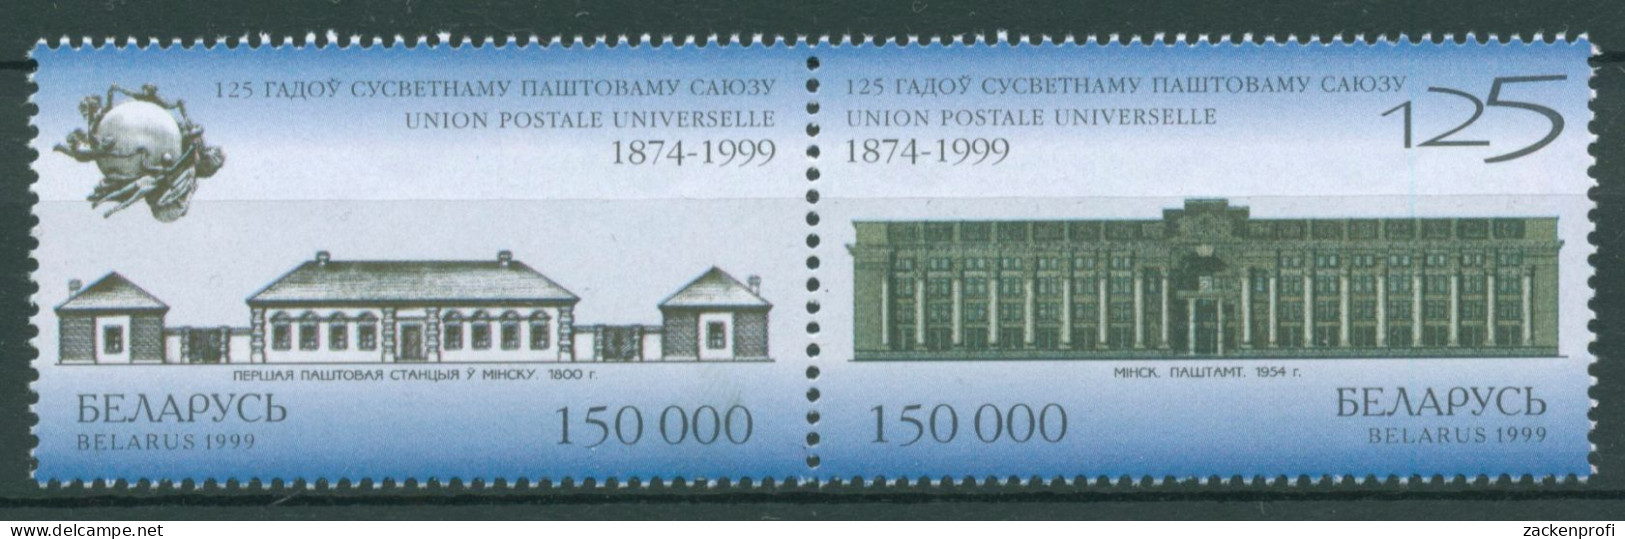 Weißrussland 1999 Weltpostverein UPU Postamt Minsk 328/29 ZD Postfrisch - Belarus